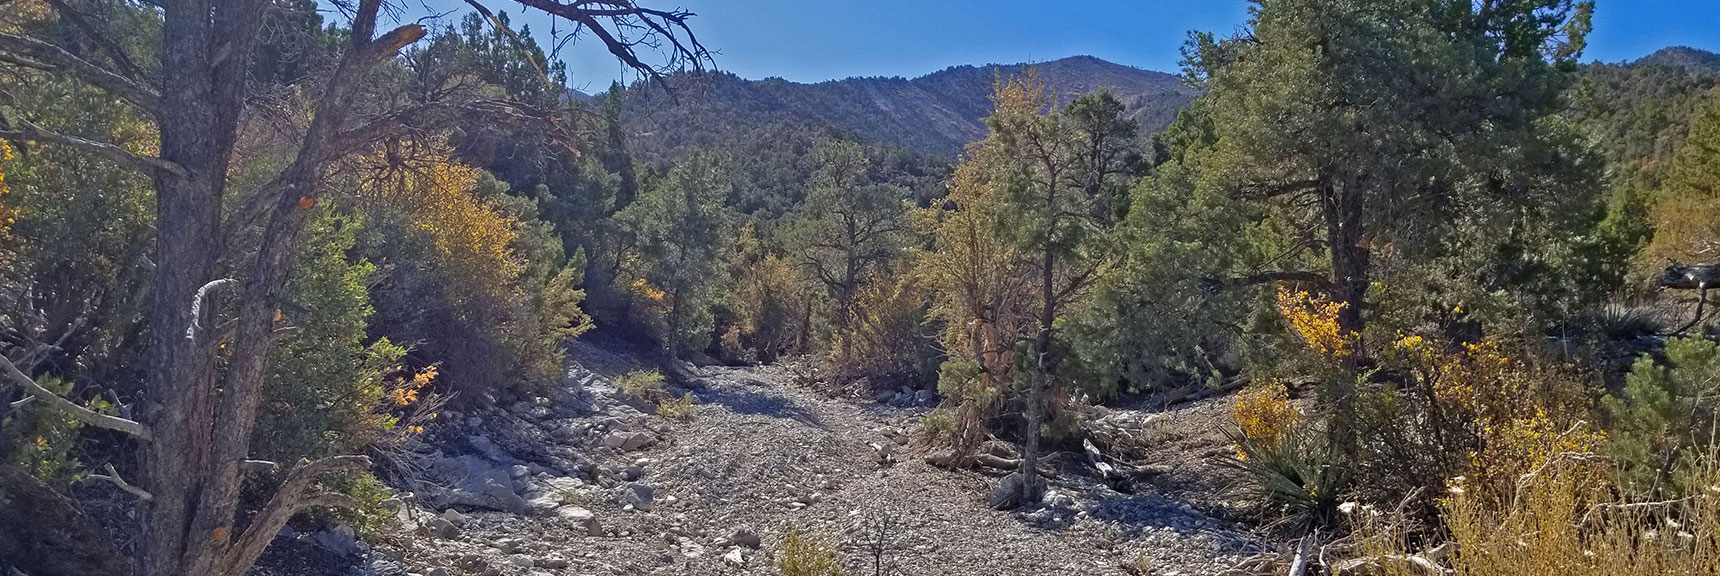 Mike Alcorn Trail in La Madre Mountain Approach Wash | La Madre Mountain,, El Padre Mountain, Burnt Peak | La Madre Mountains Wilderness, Nevada